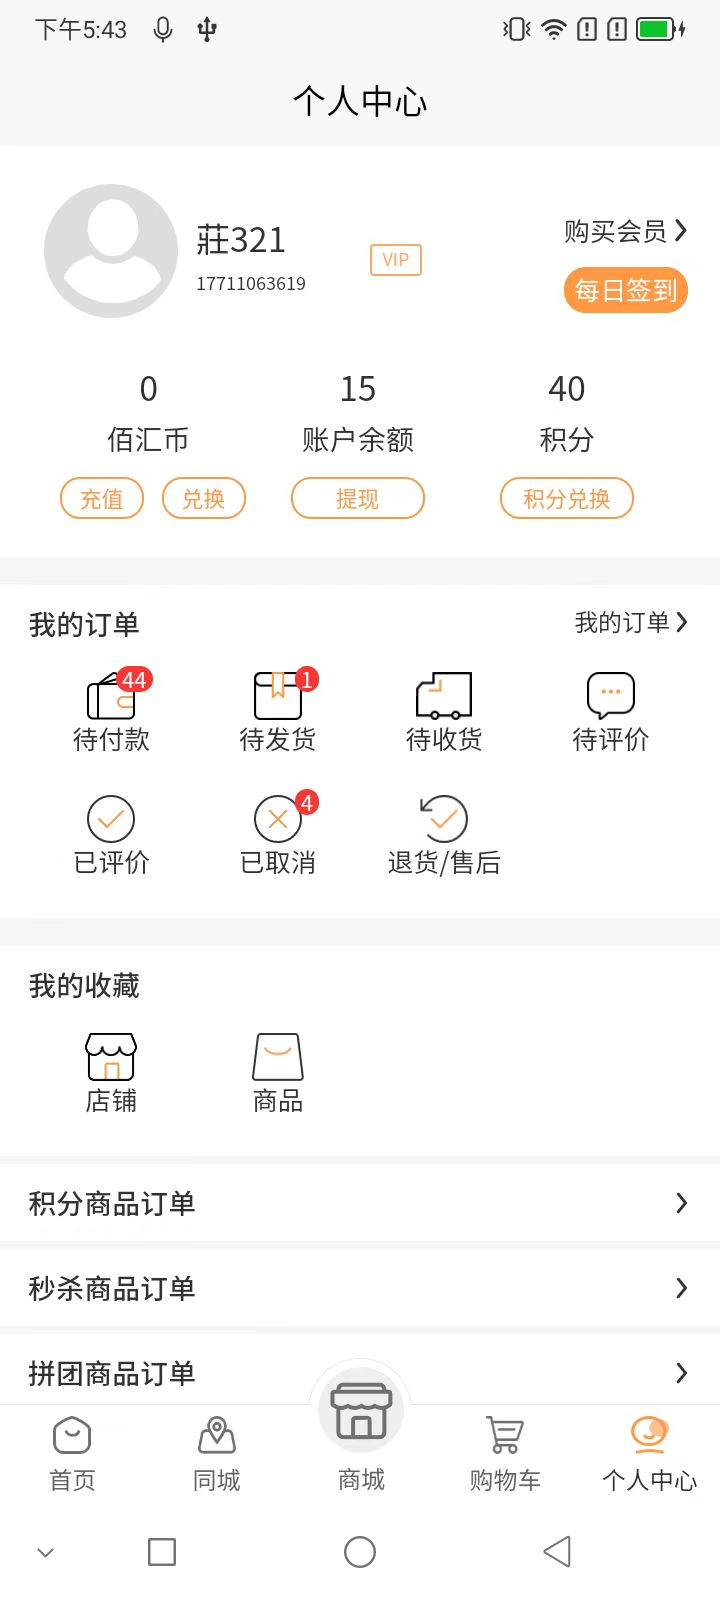 佰汇app下载,佰汇同城购物app客户端 v1.0.0